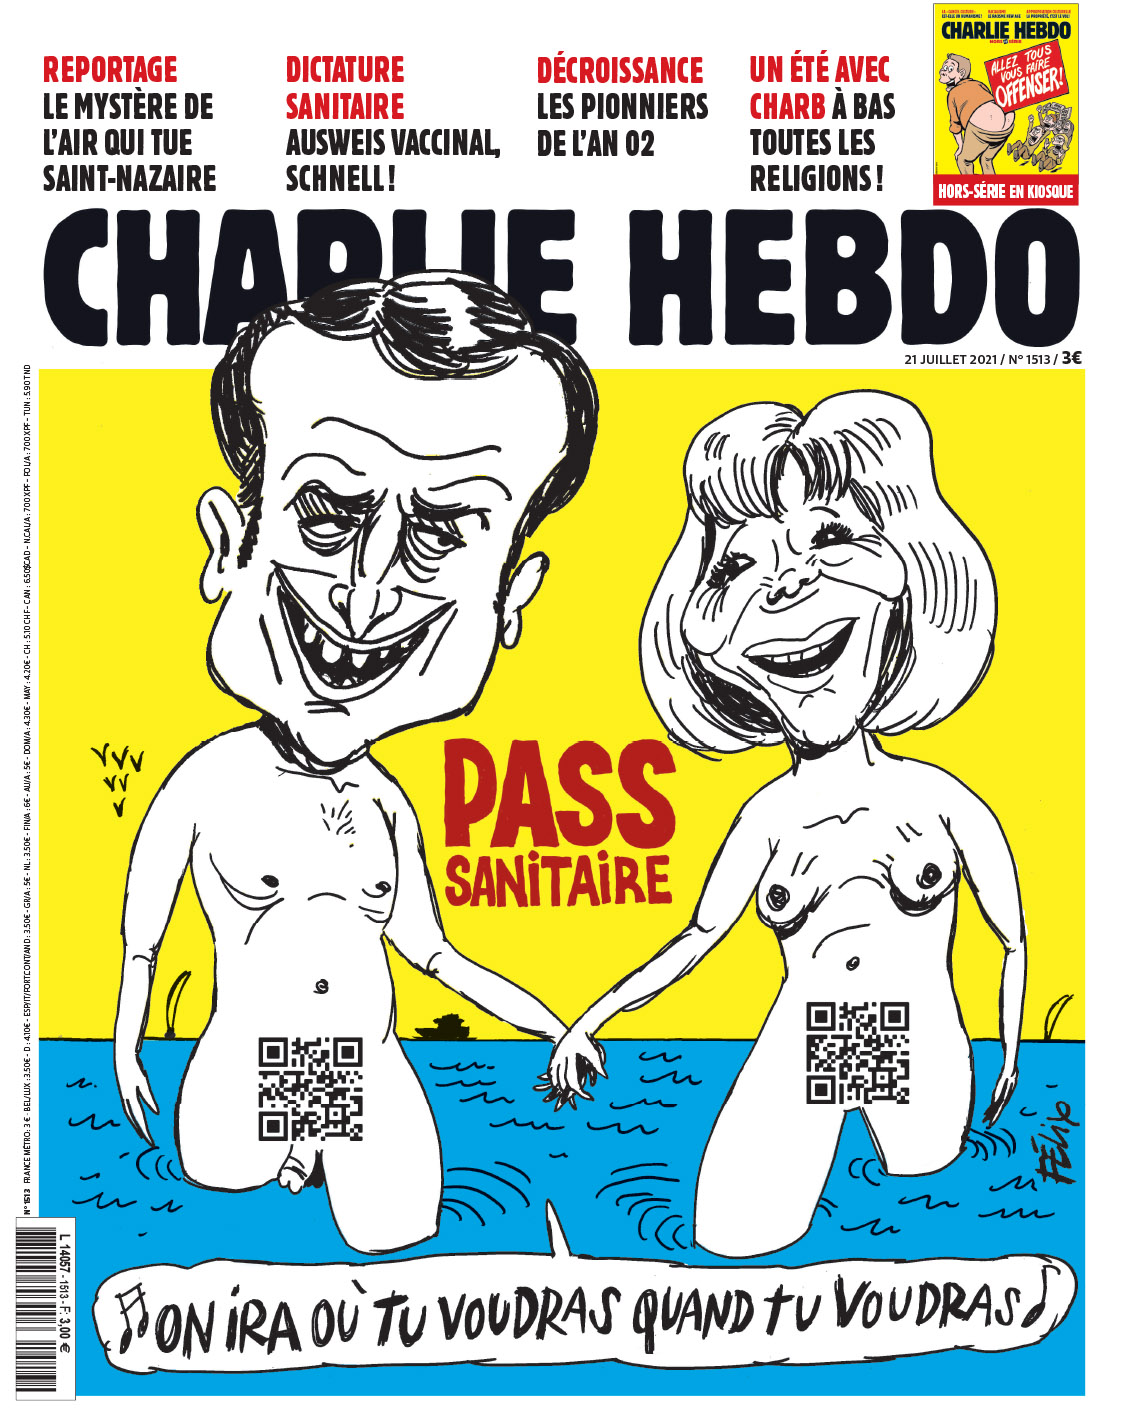 Το Charlie Hebdo κατά του Γάλλου προέδρου.